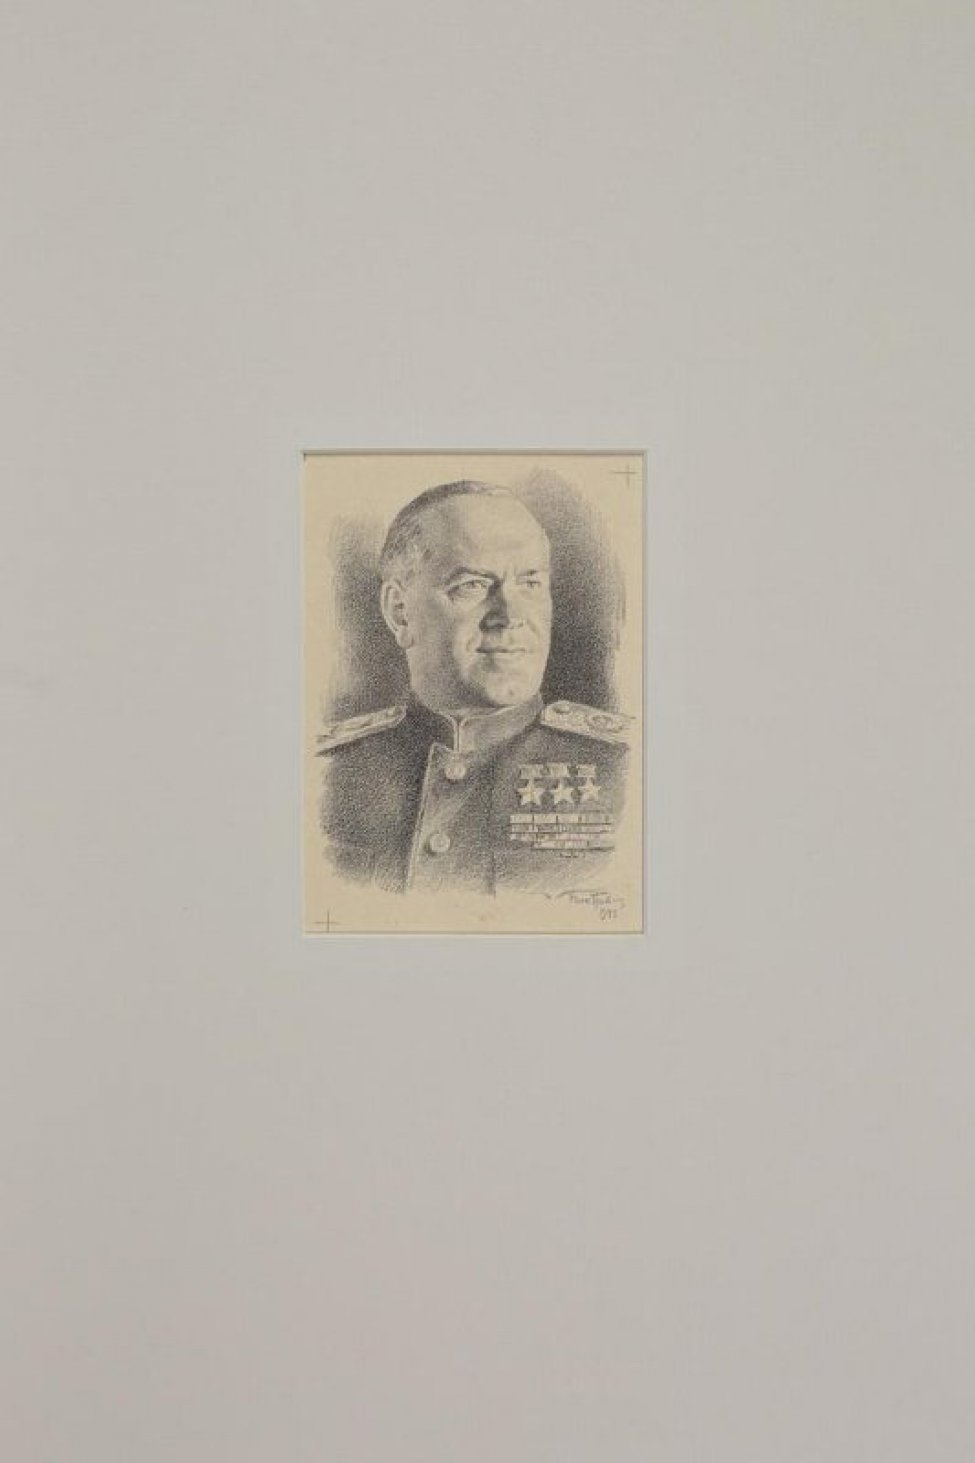 Погрудное изображение  мужчины в военной форме с тремя звездами Героя на груди. На изображении справа внизу : Ник. Павлов. 1945г.